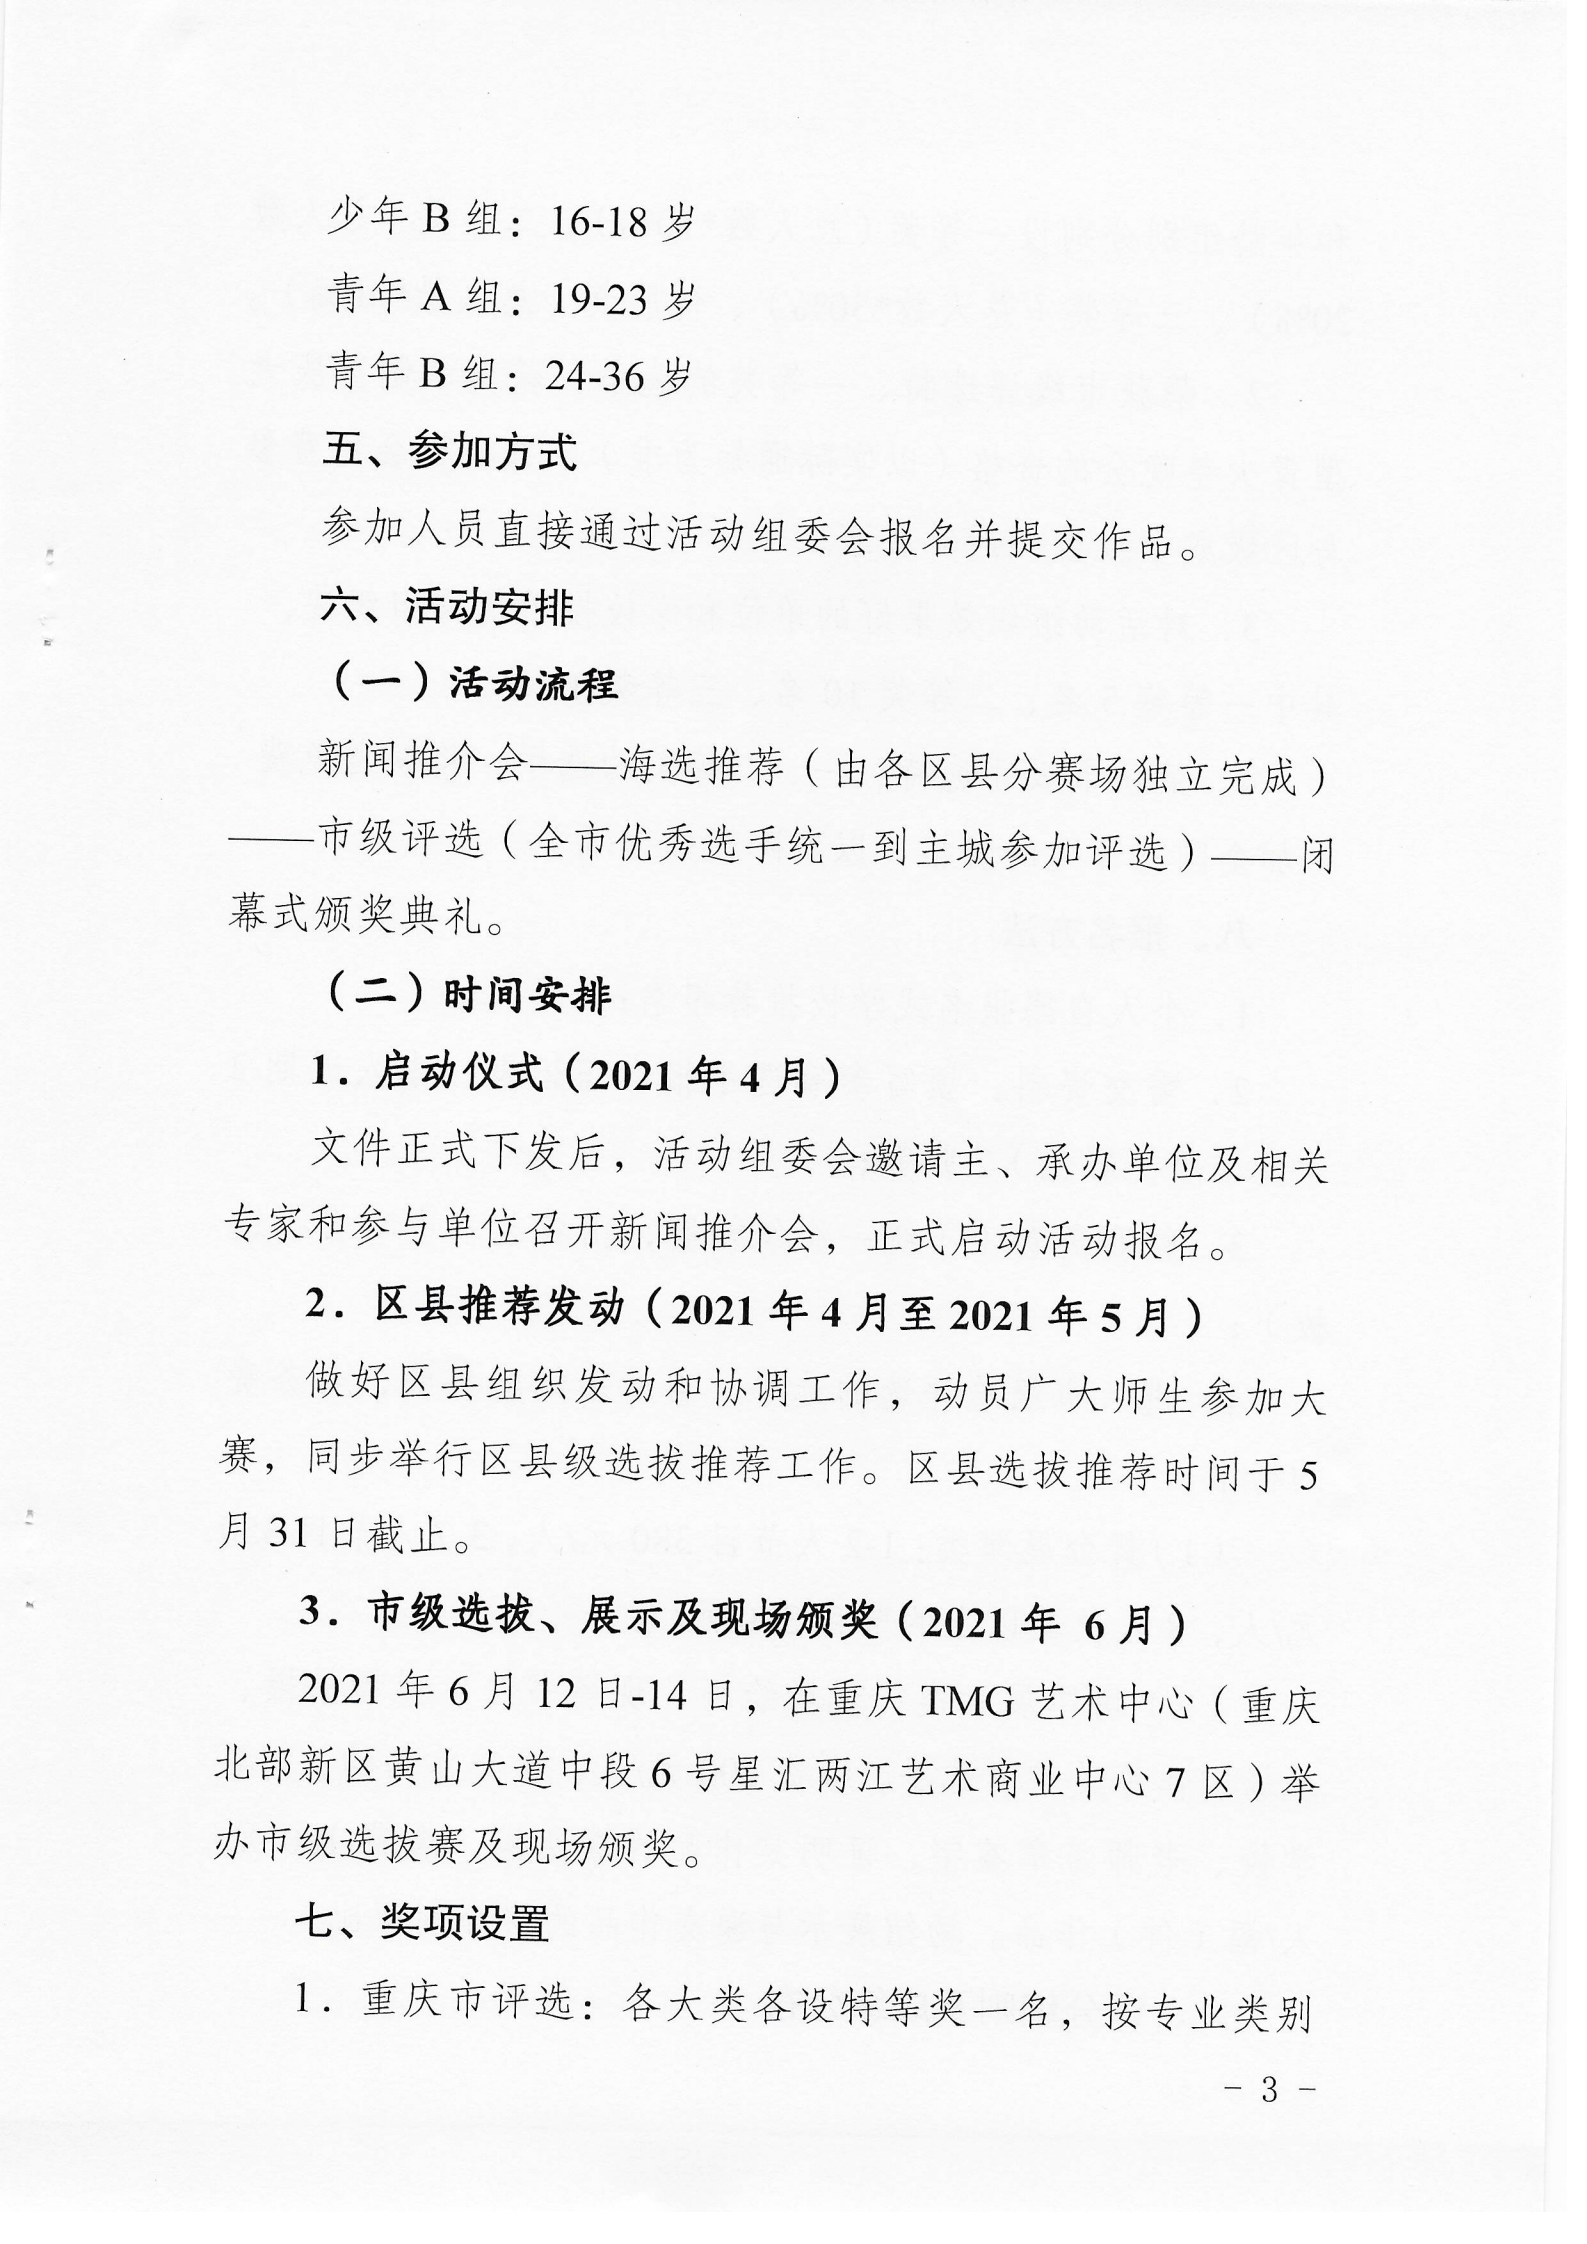 6_少社行〔2021〕17号 关于开展重庆市青少年艺术展演活动的通知_02.png